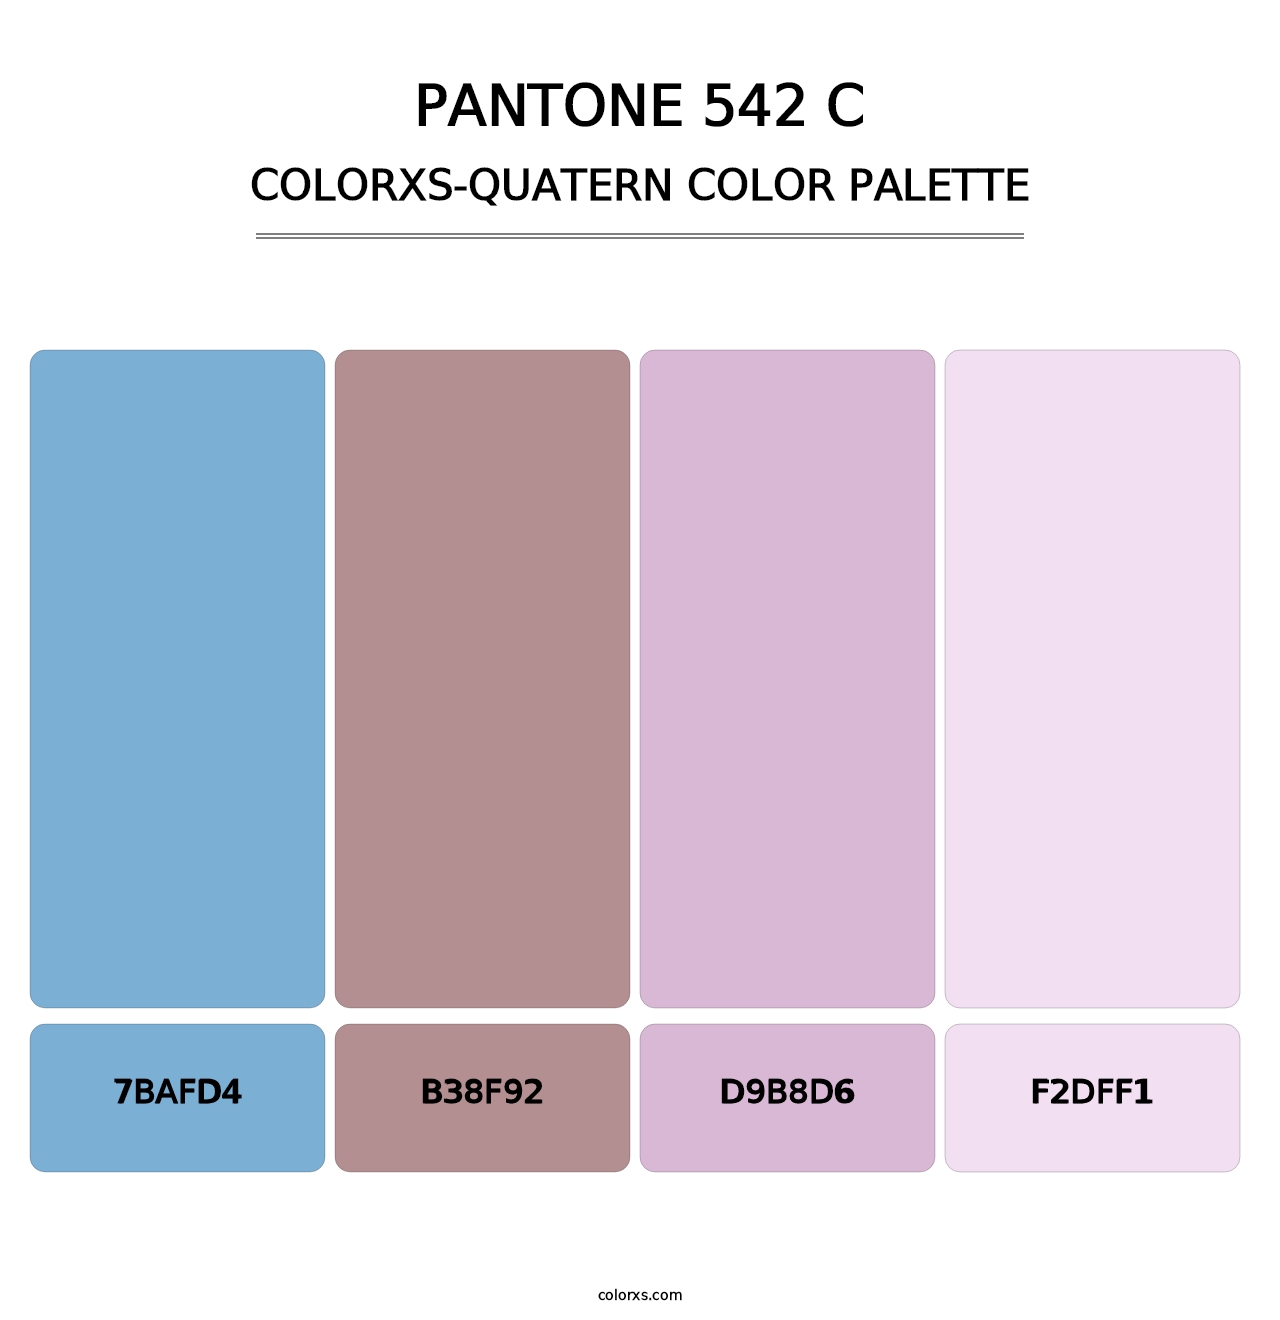 PANTONE 542 C - Colorxs Quatern Palette